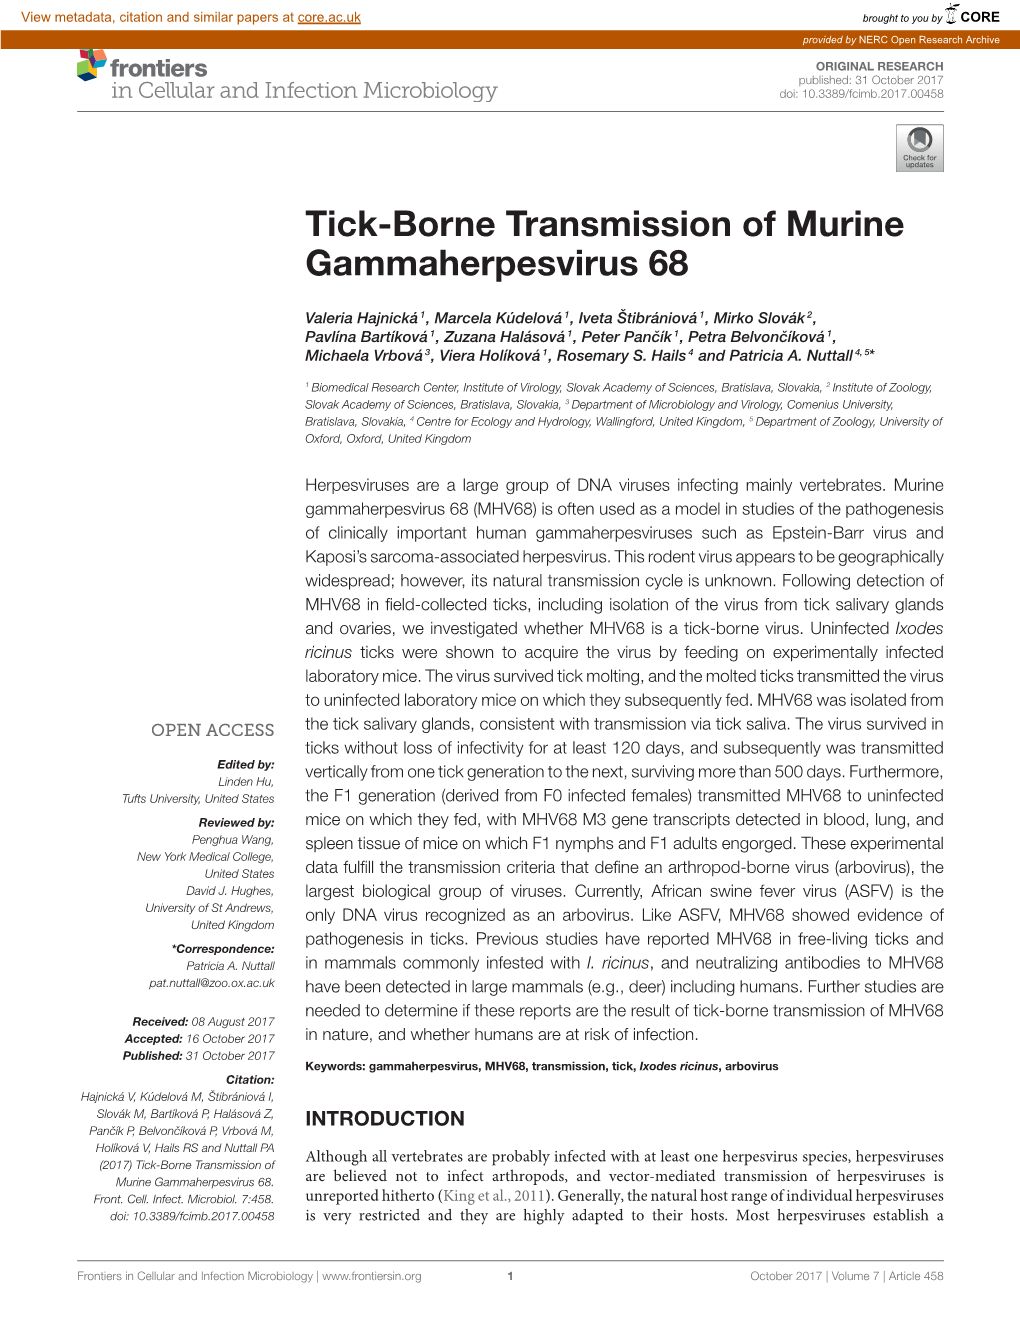 Tick-Borne Transmission of Murine Gammaherpesvirus 68